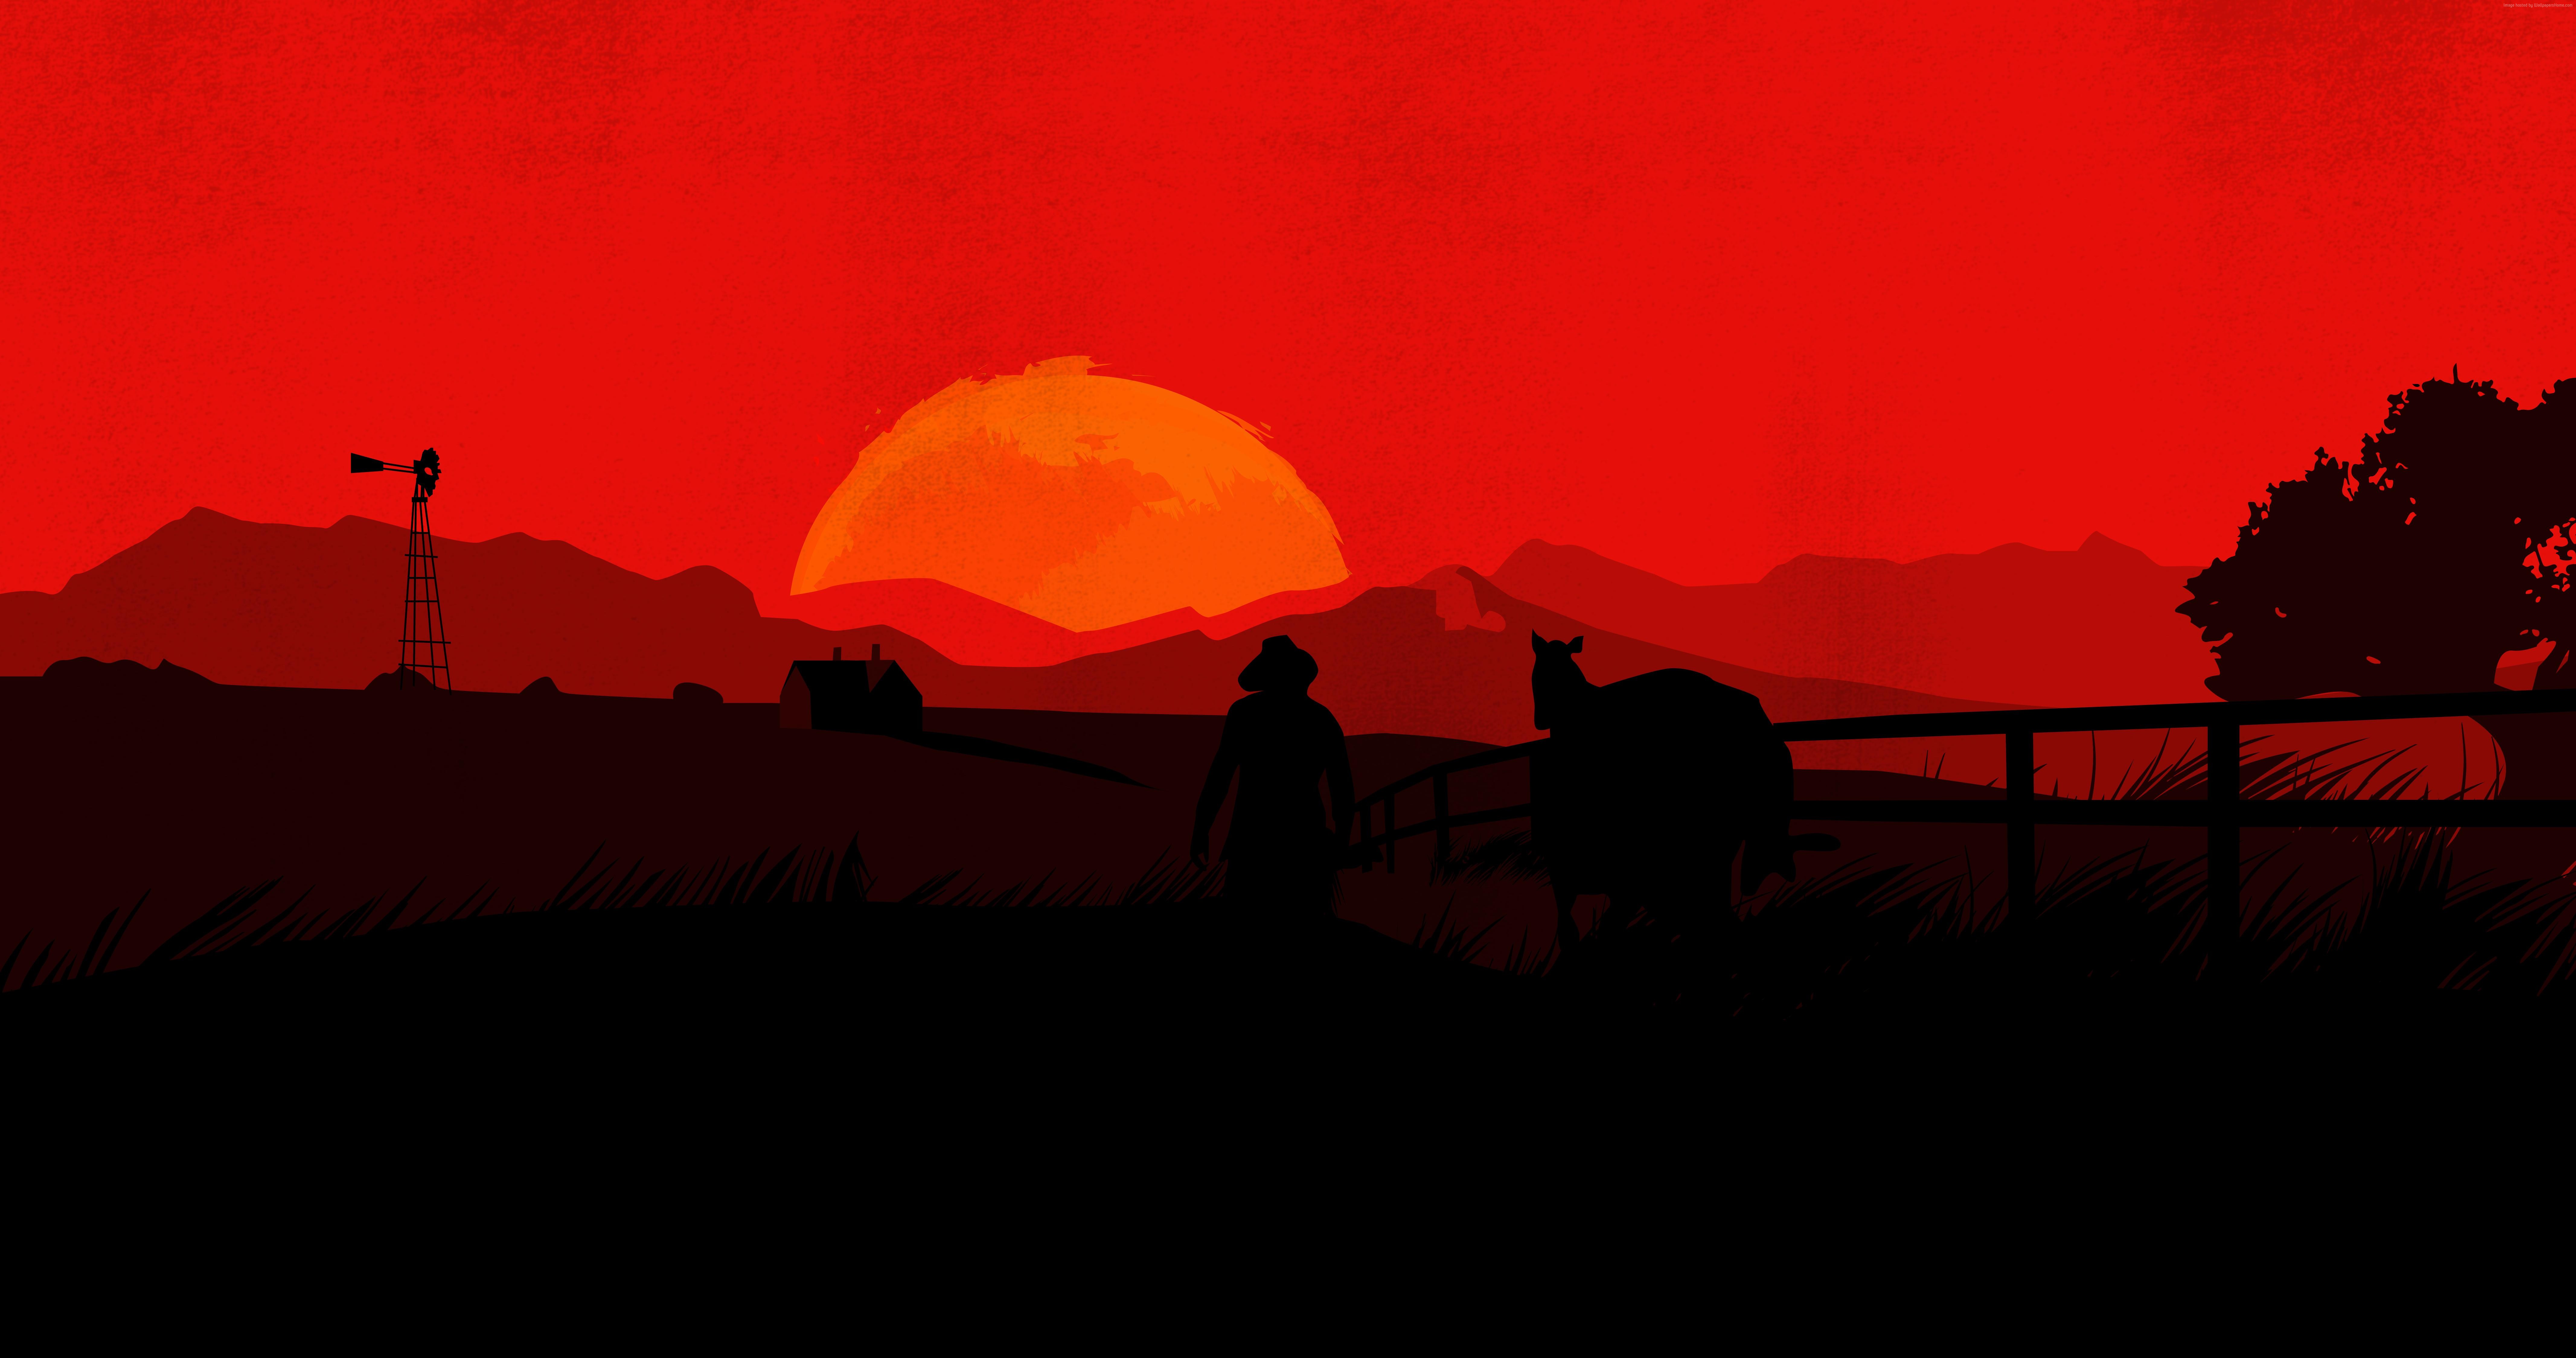 Hình nền Red Dead Redemption 2 sẽ đưa bạn đến với những cảnh đẹp mê ly và kịch tính trong thế giới hoang dã. Chọn cho mình một bức ảnh hoàn hảo để đem lại cho màn hình máy tính của bạn sự chuyên nghiệp và đẳng cấp.